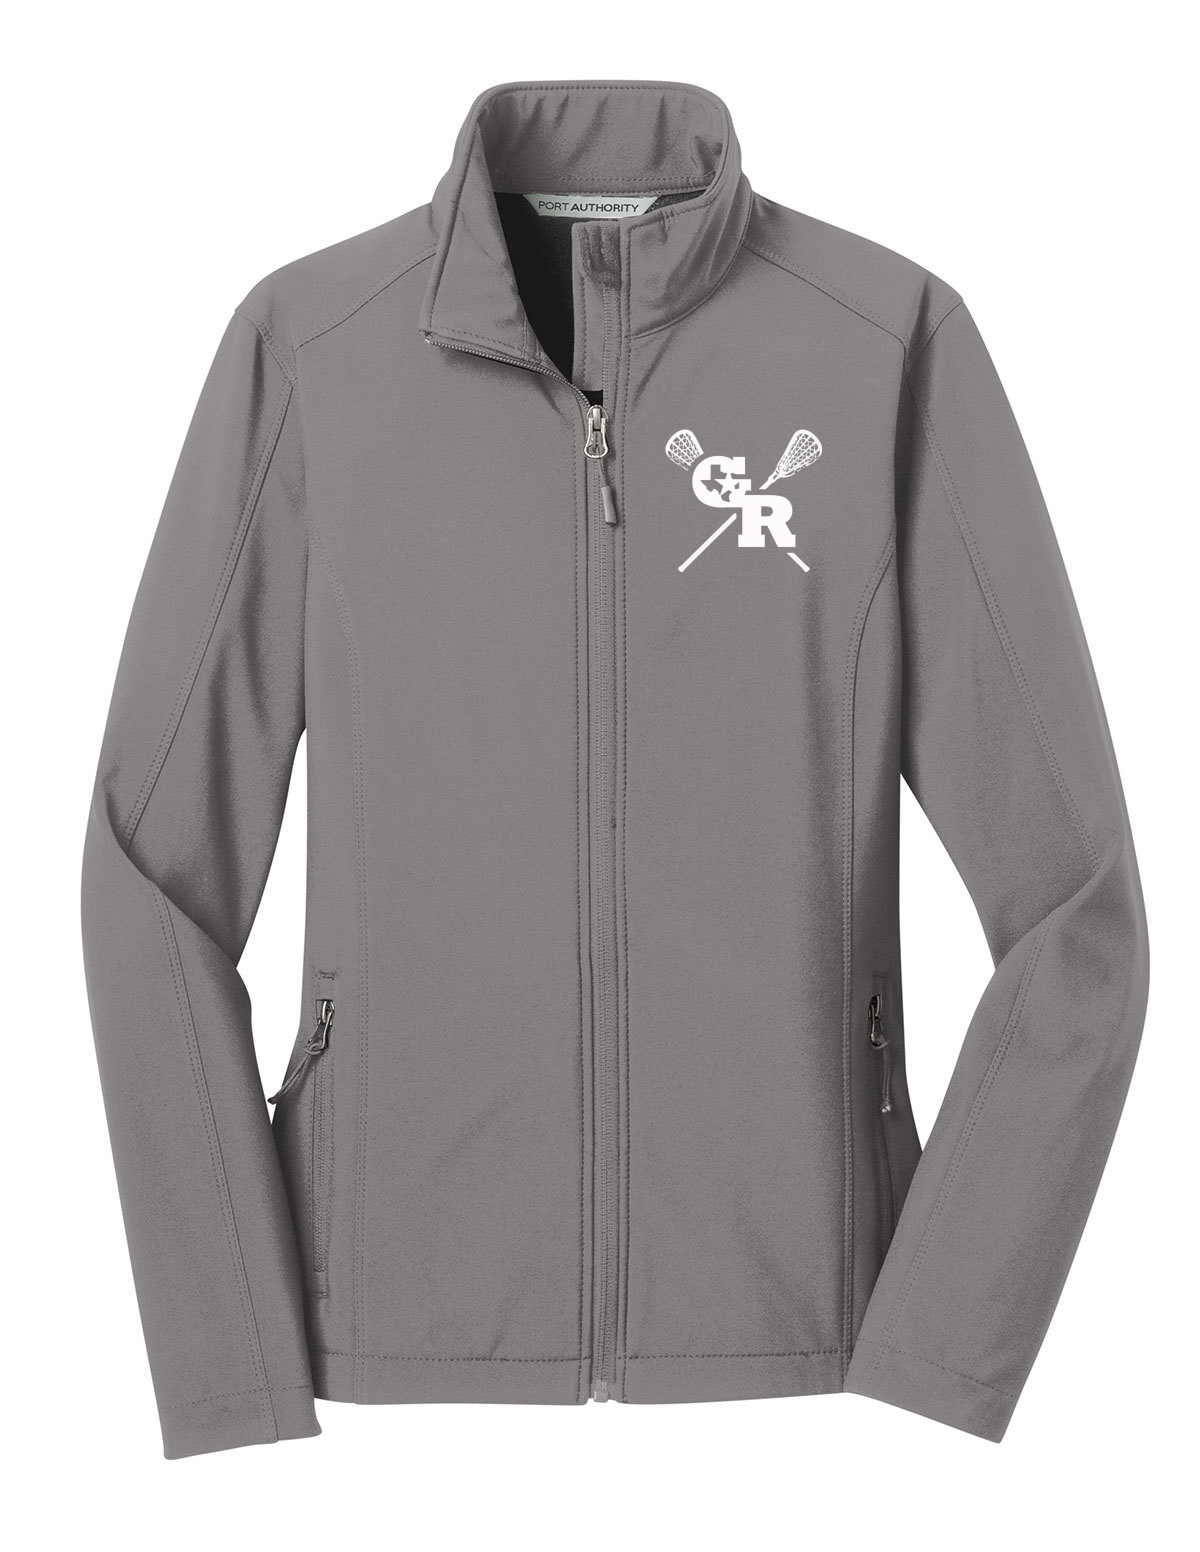 GR Longhorns Lacrosse Women's Soft Shell Jacket